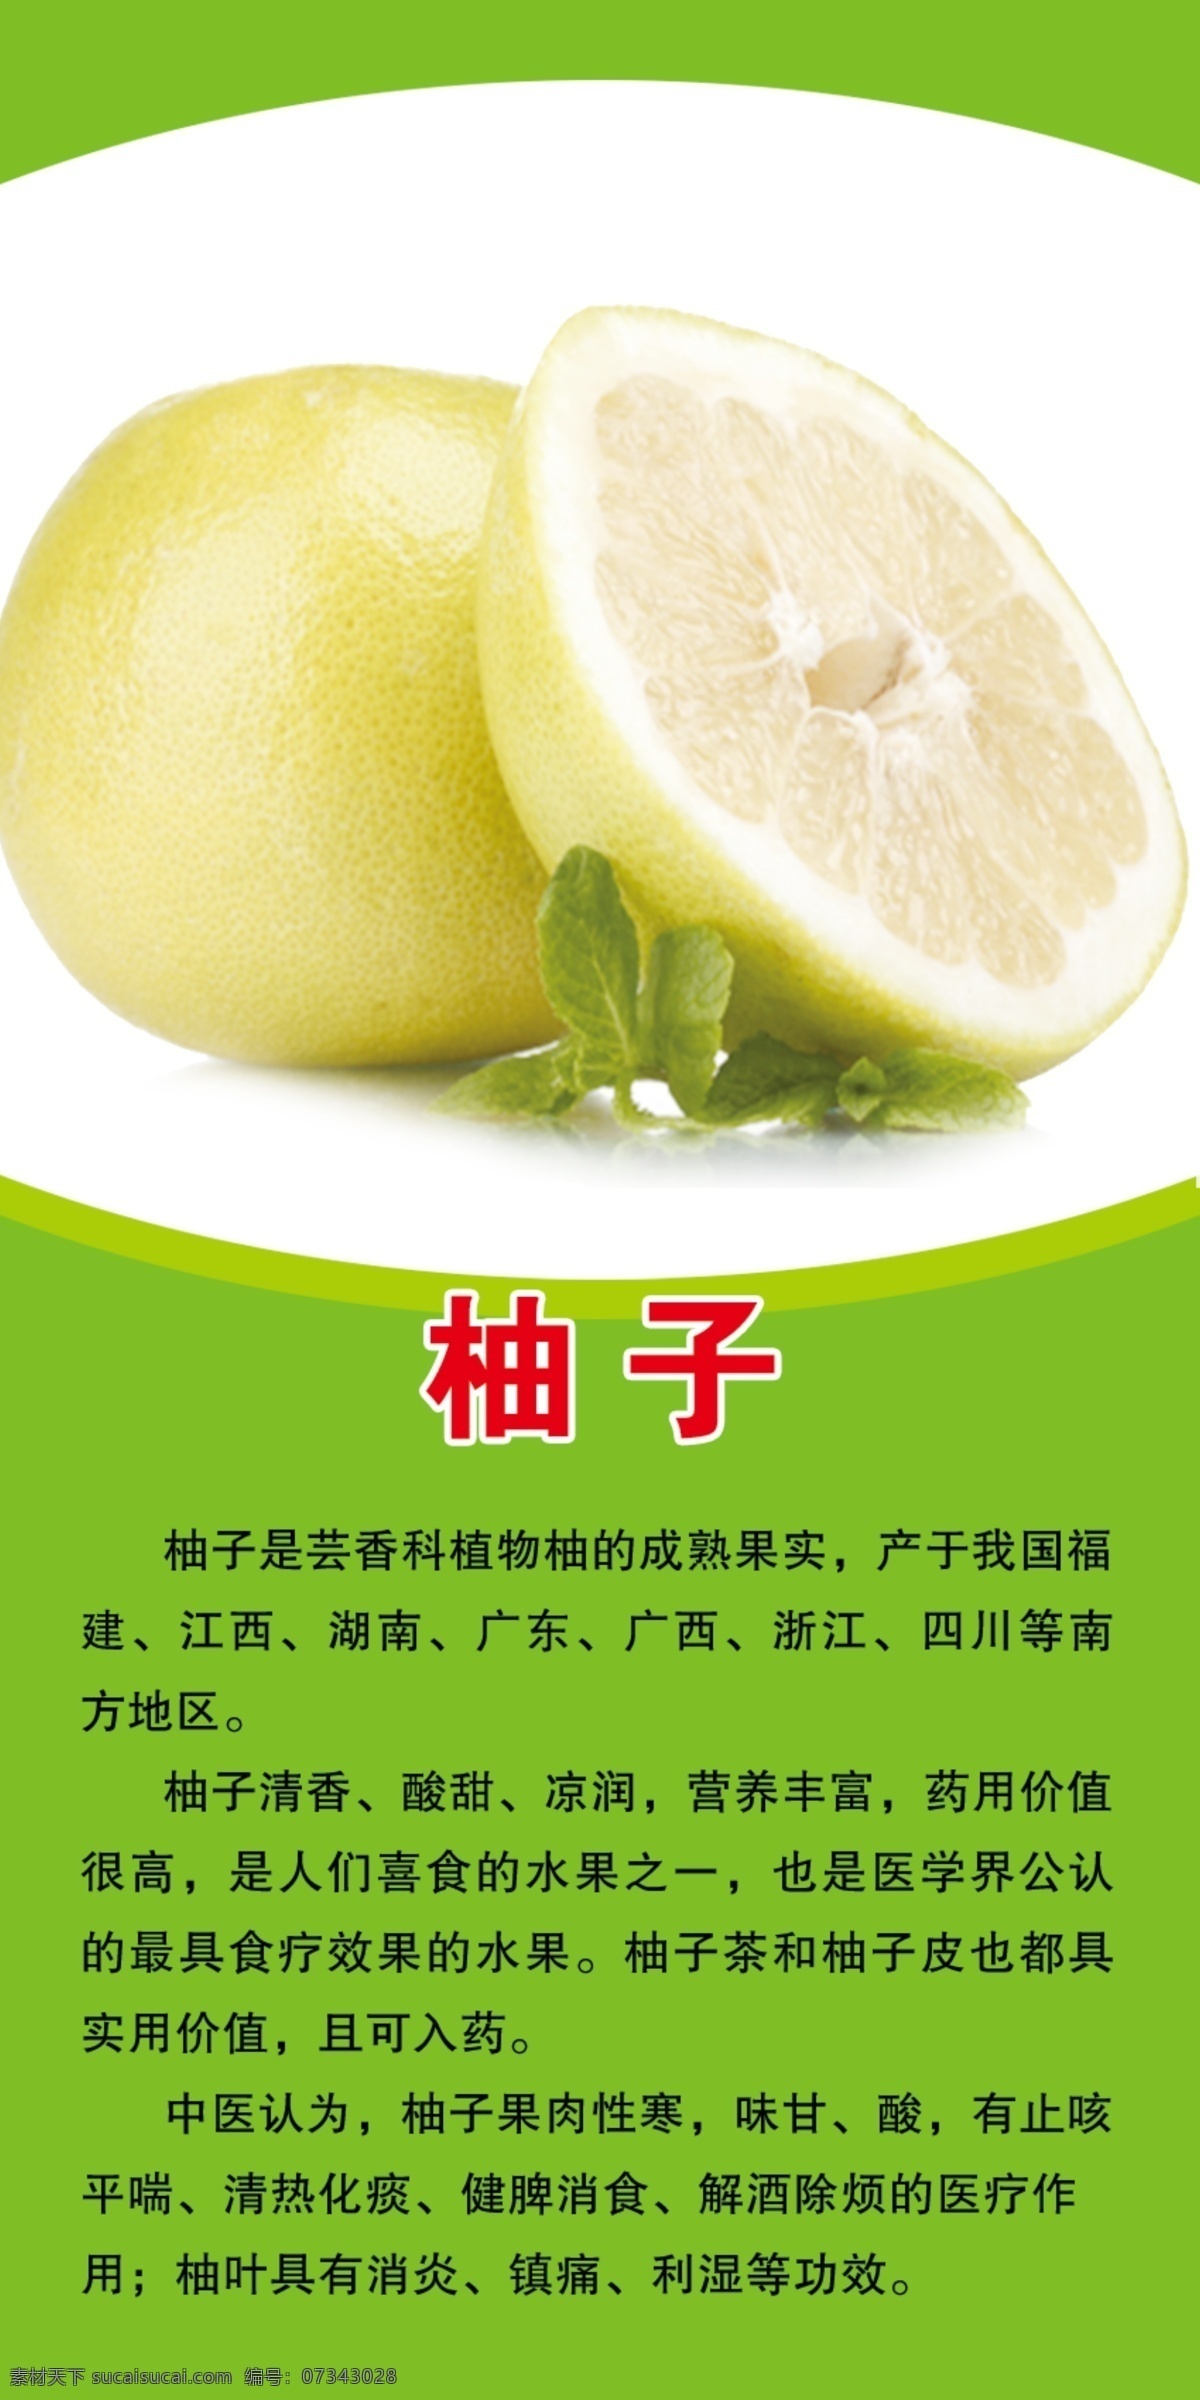 柚子 水果介绍 绿色 生鲜店 水果好处 宣传挂图